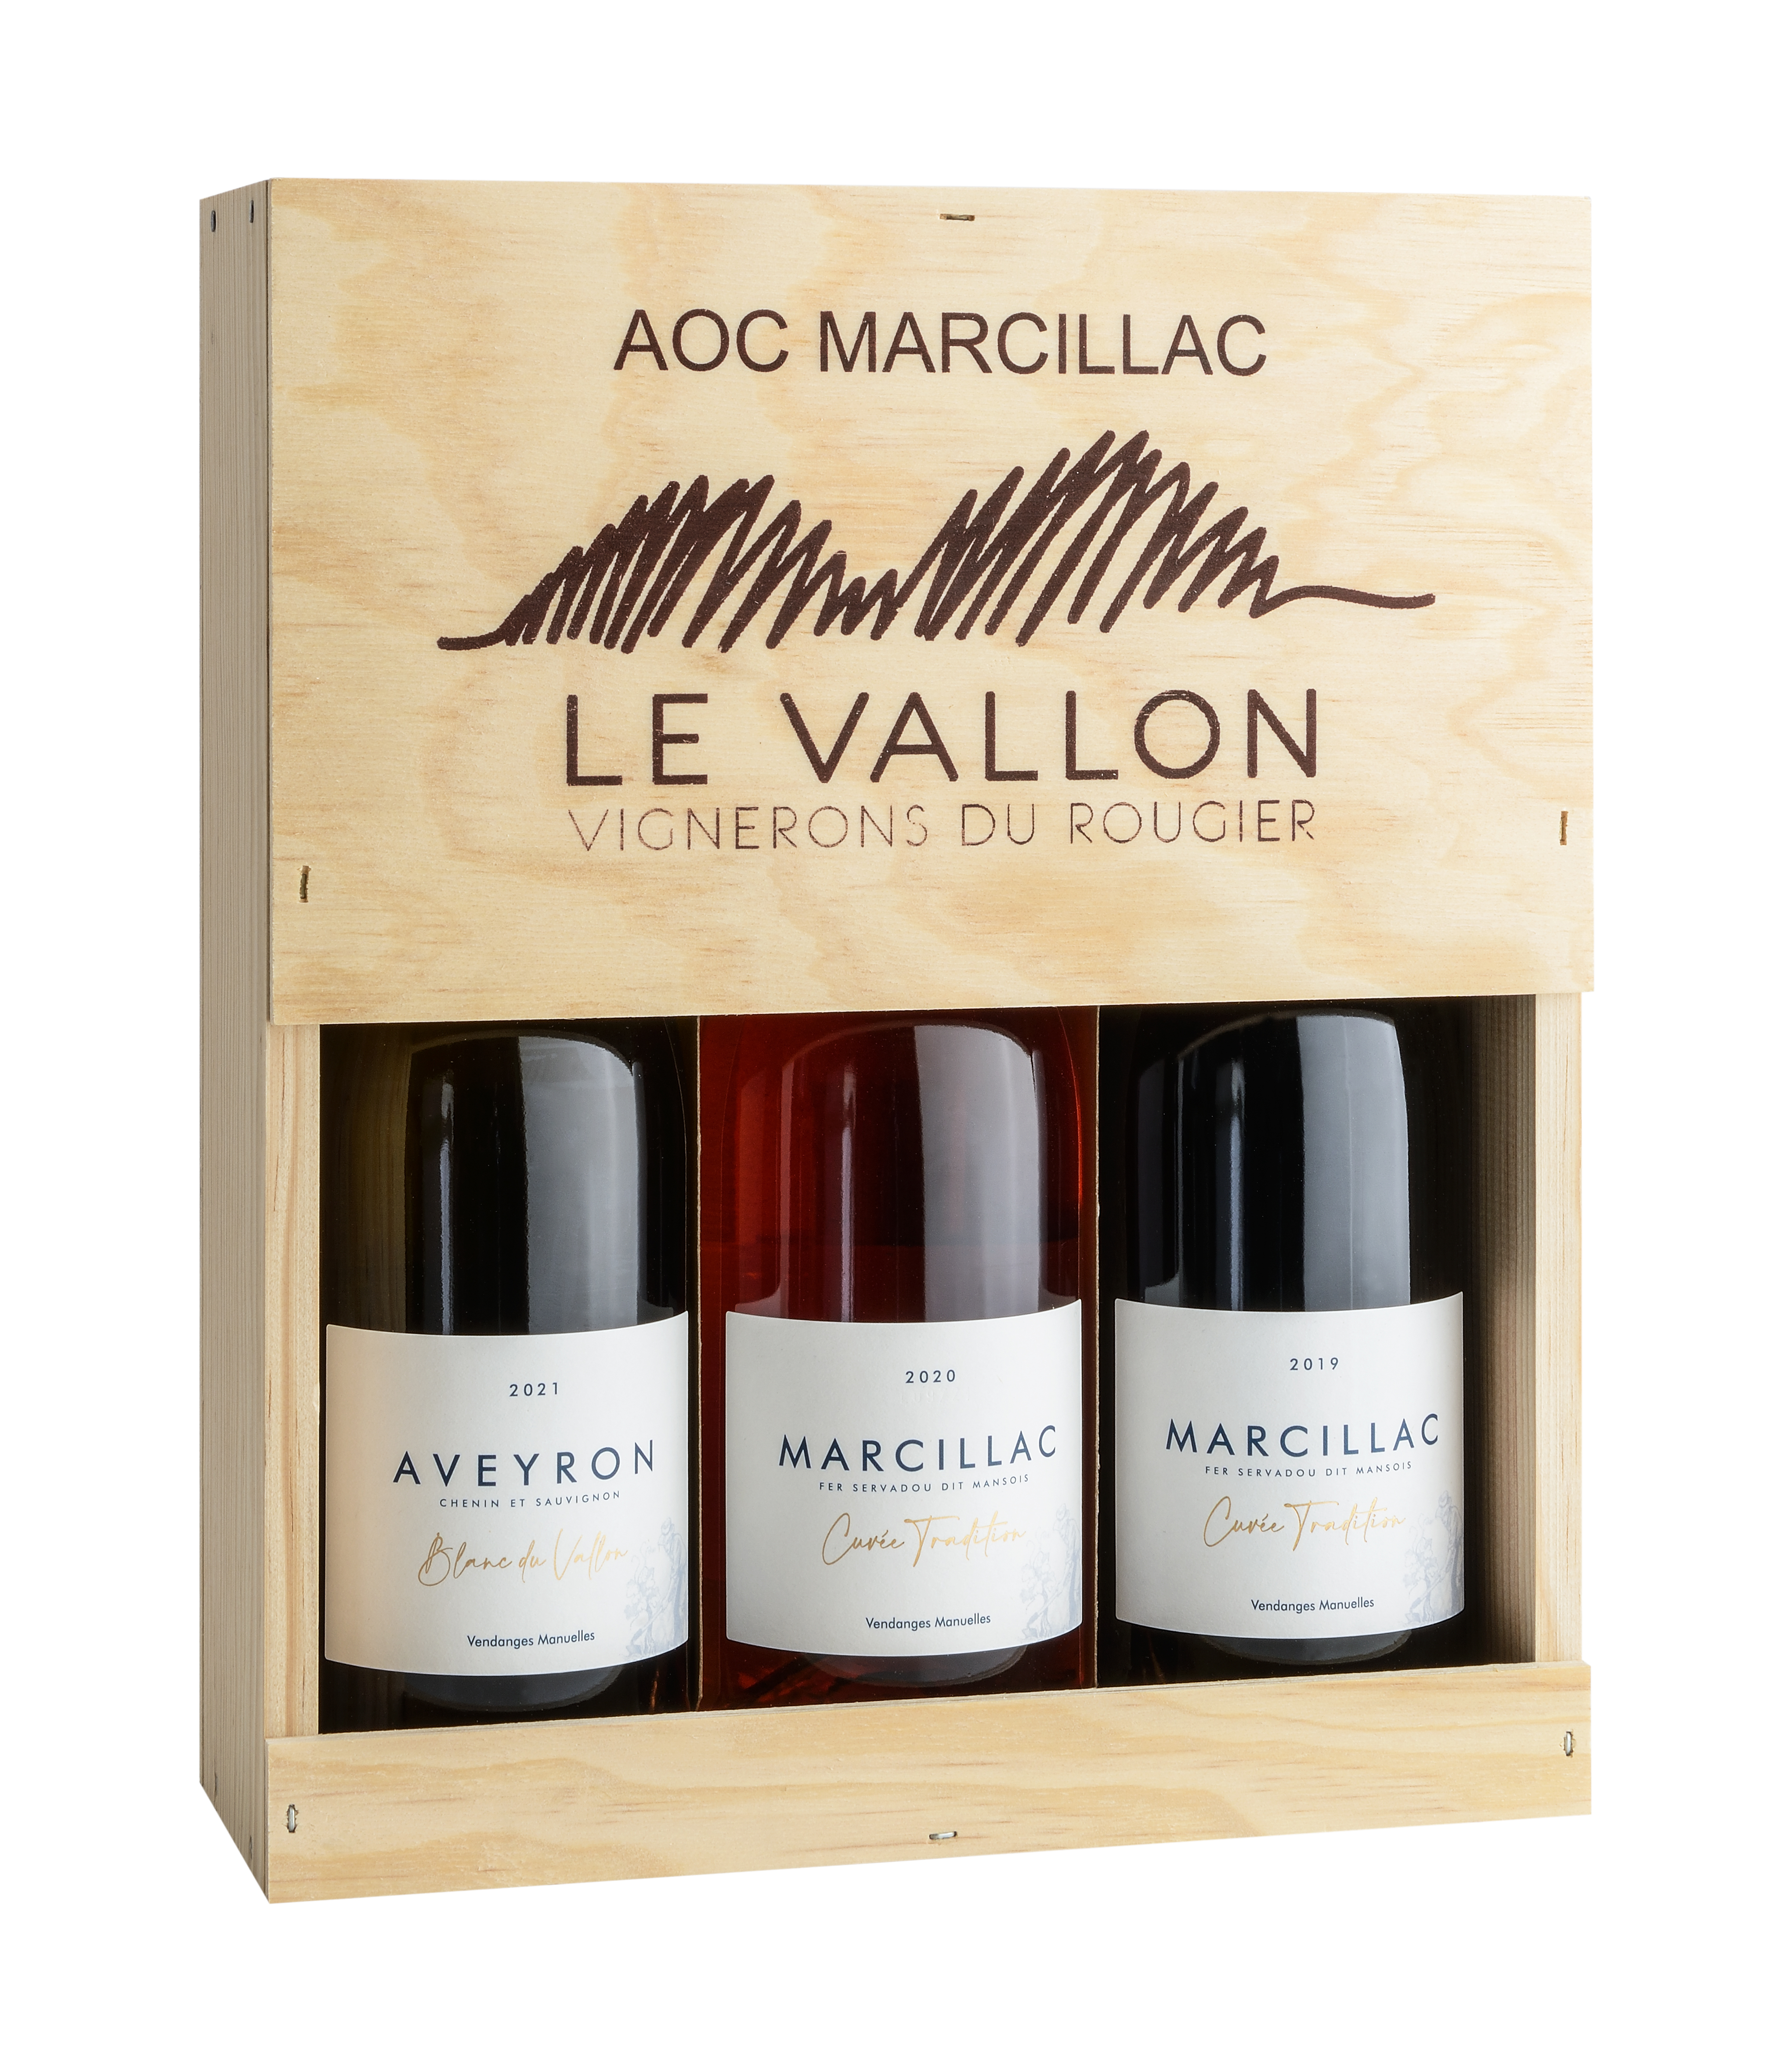 Coffret Tradition, AOC Marcillac					
								
						
									
						 IGP Aveyron Tous les vins